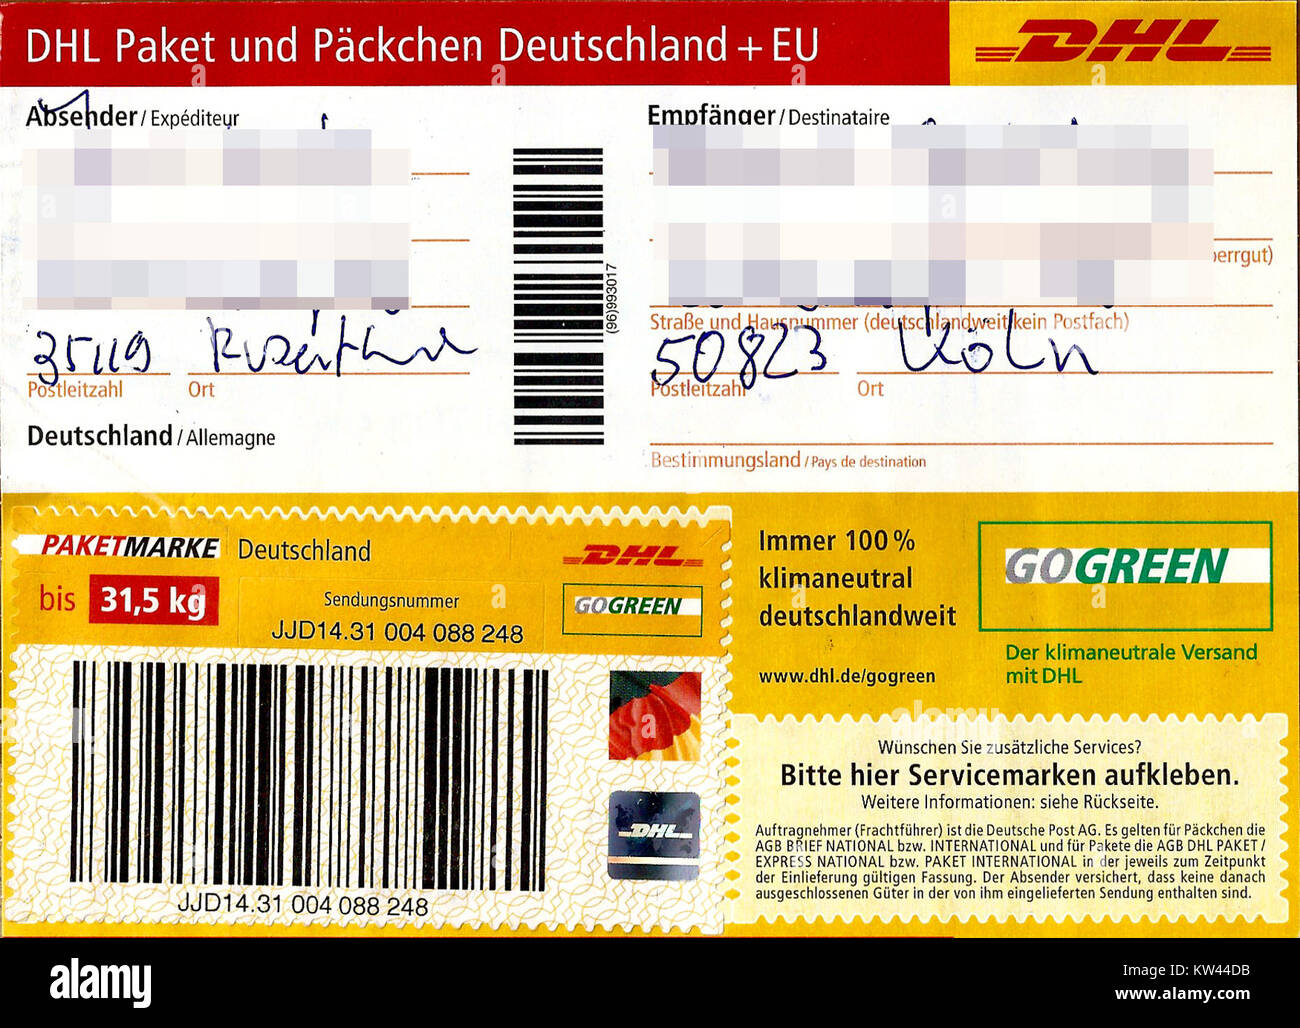 Paketaufkleber DHL Paket mit Paketmarke bis 31,5 kg 2016 ...